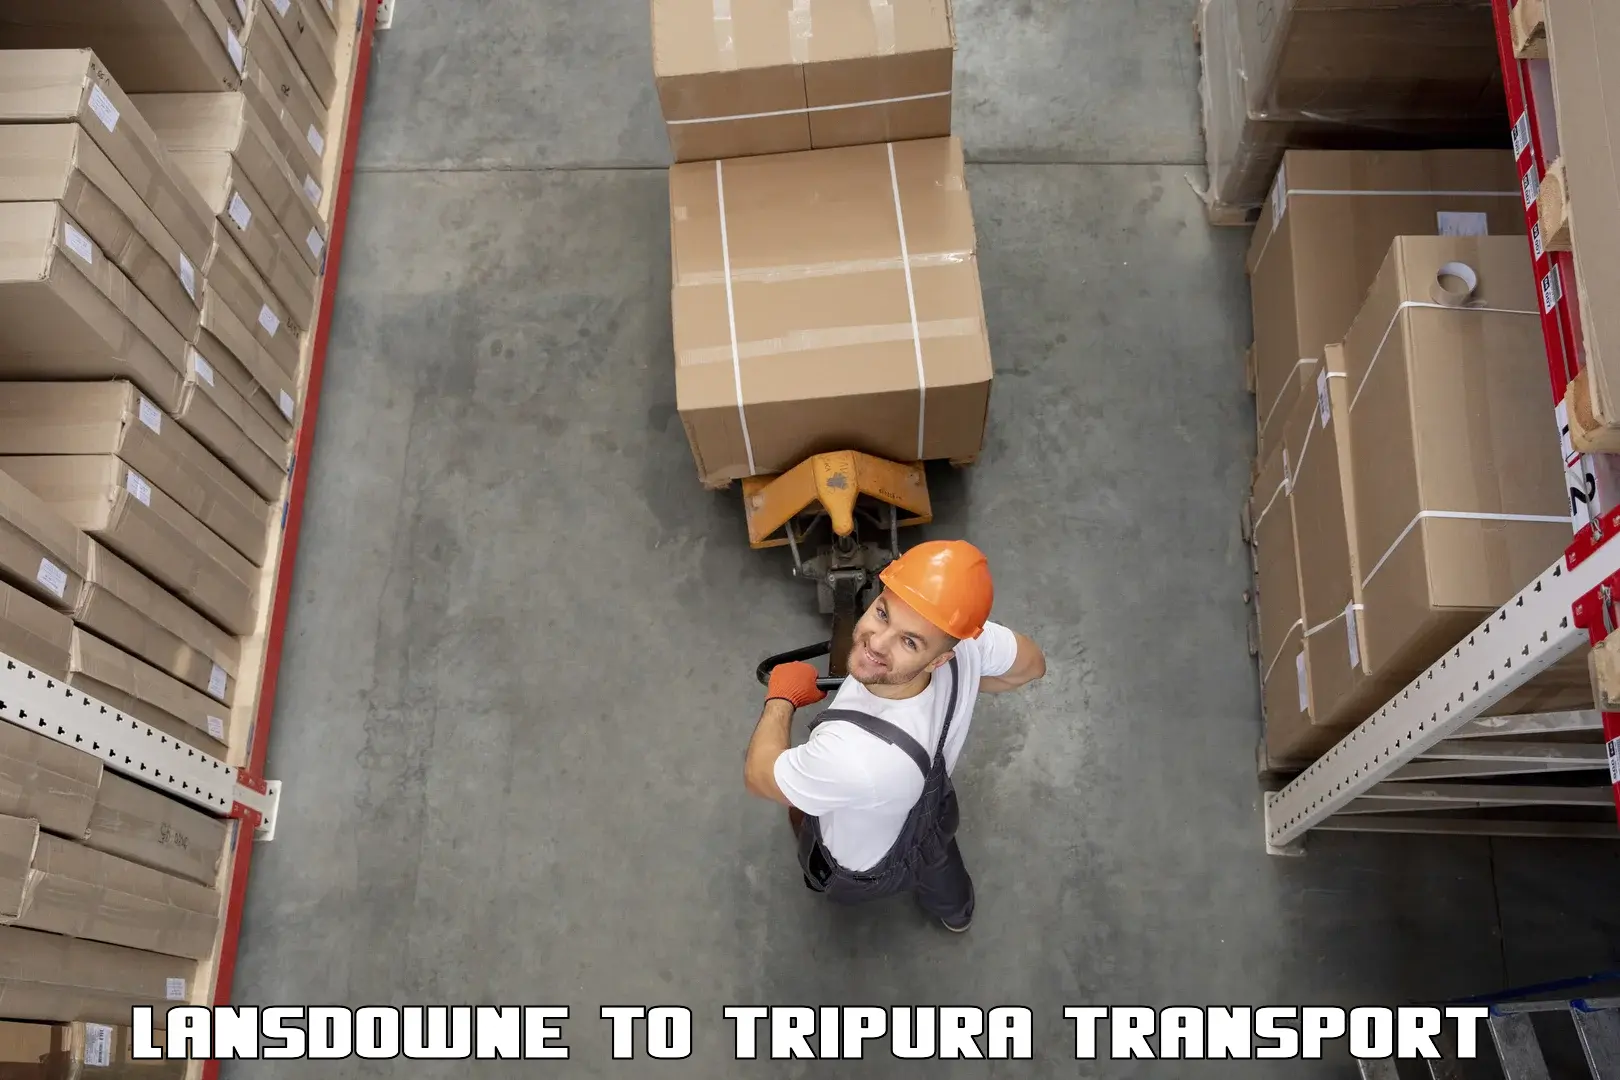 Furniture transport service in Lansdowne to Kamalpur